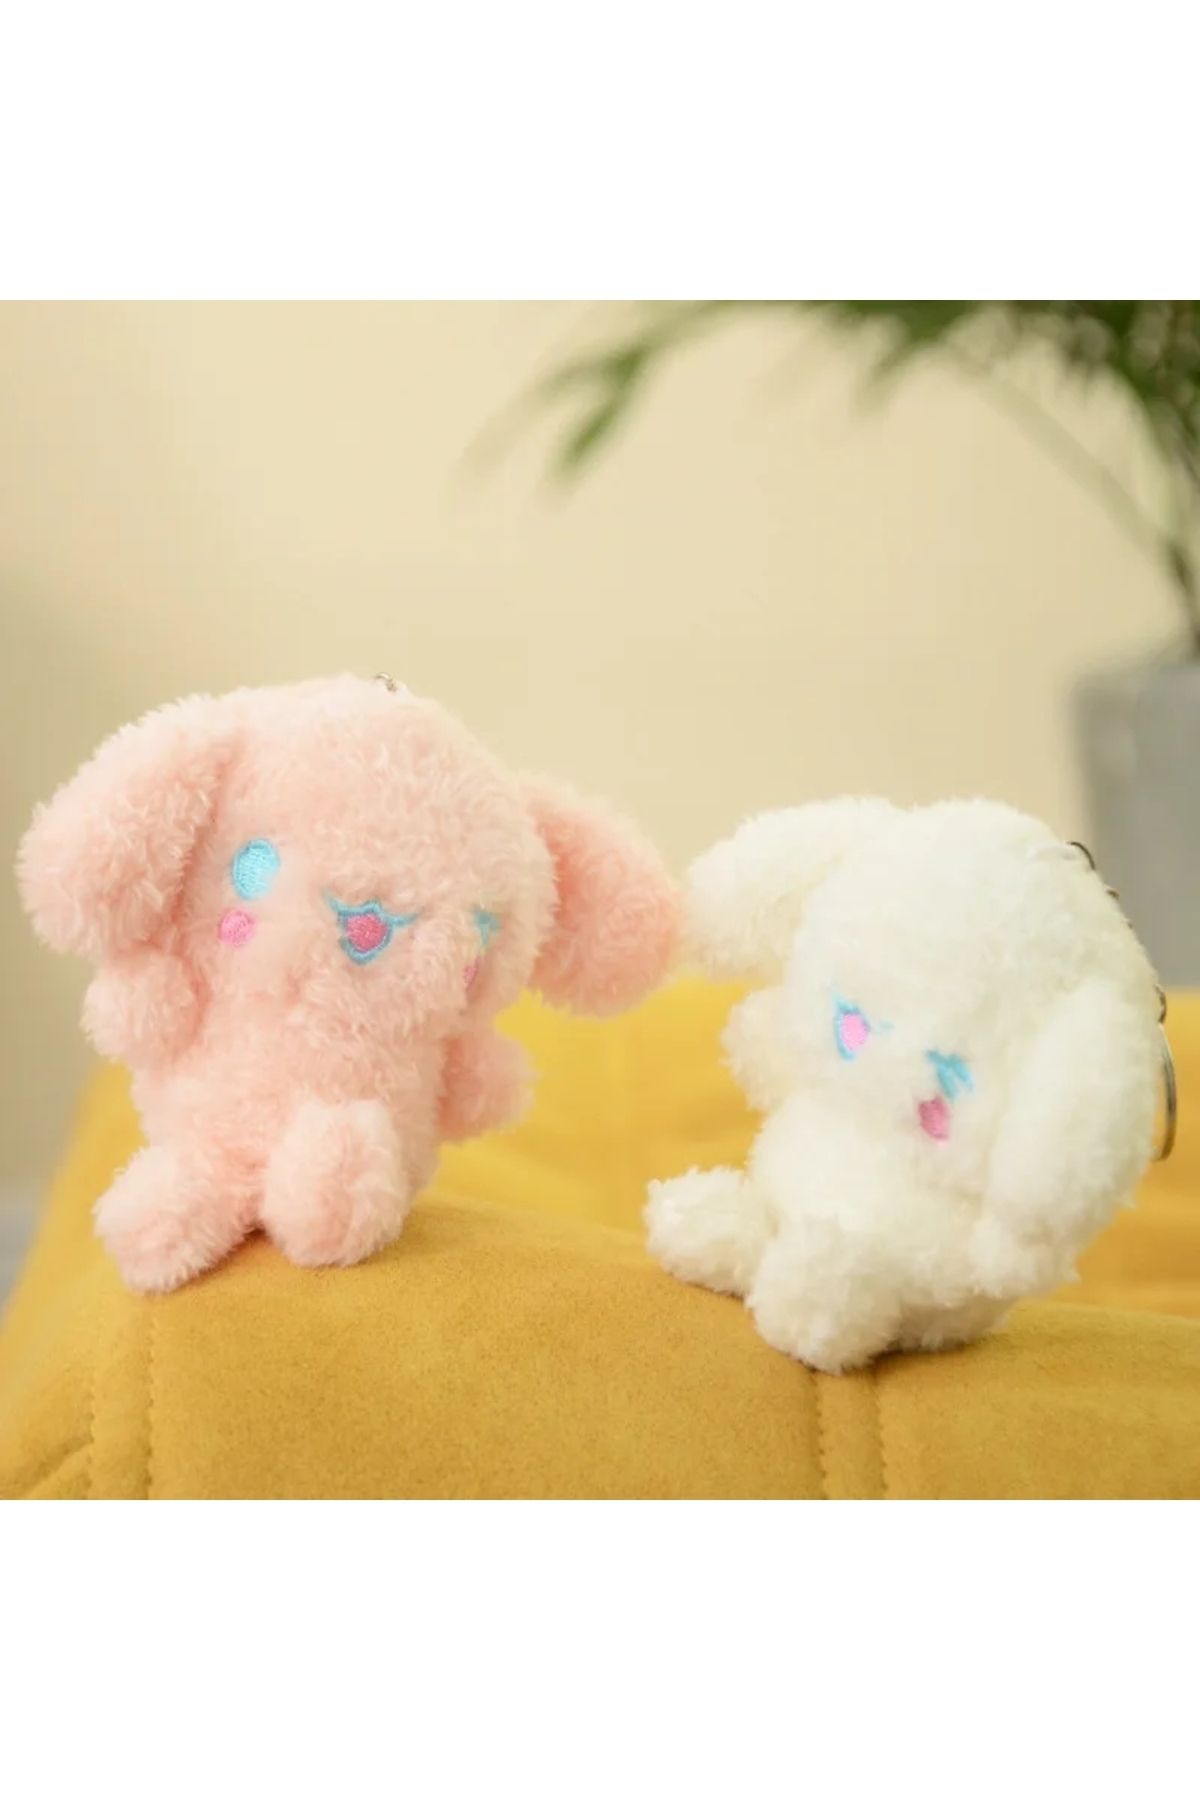 Meyra Accessories Cinnamorol japon Tavşan peluş anahtarlık oyuncak araba çanta süsü peluş